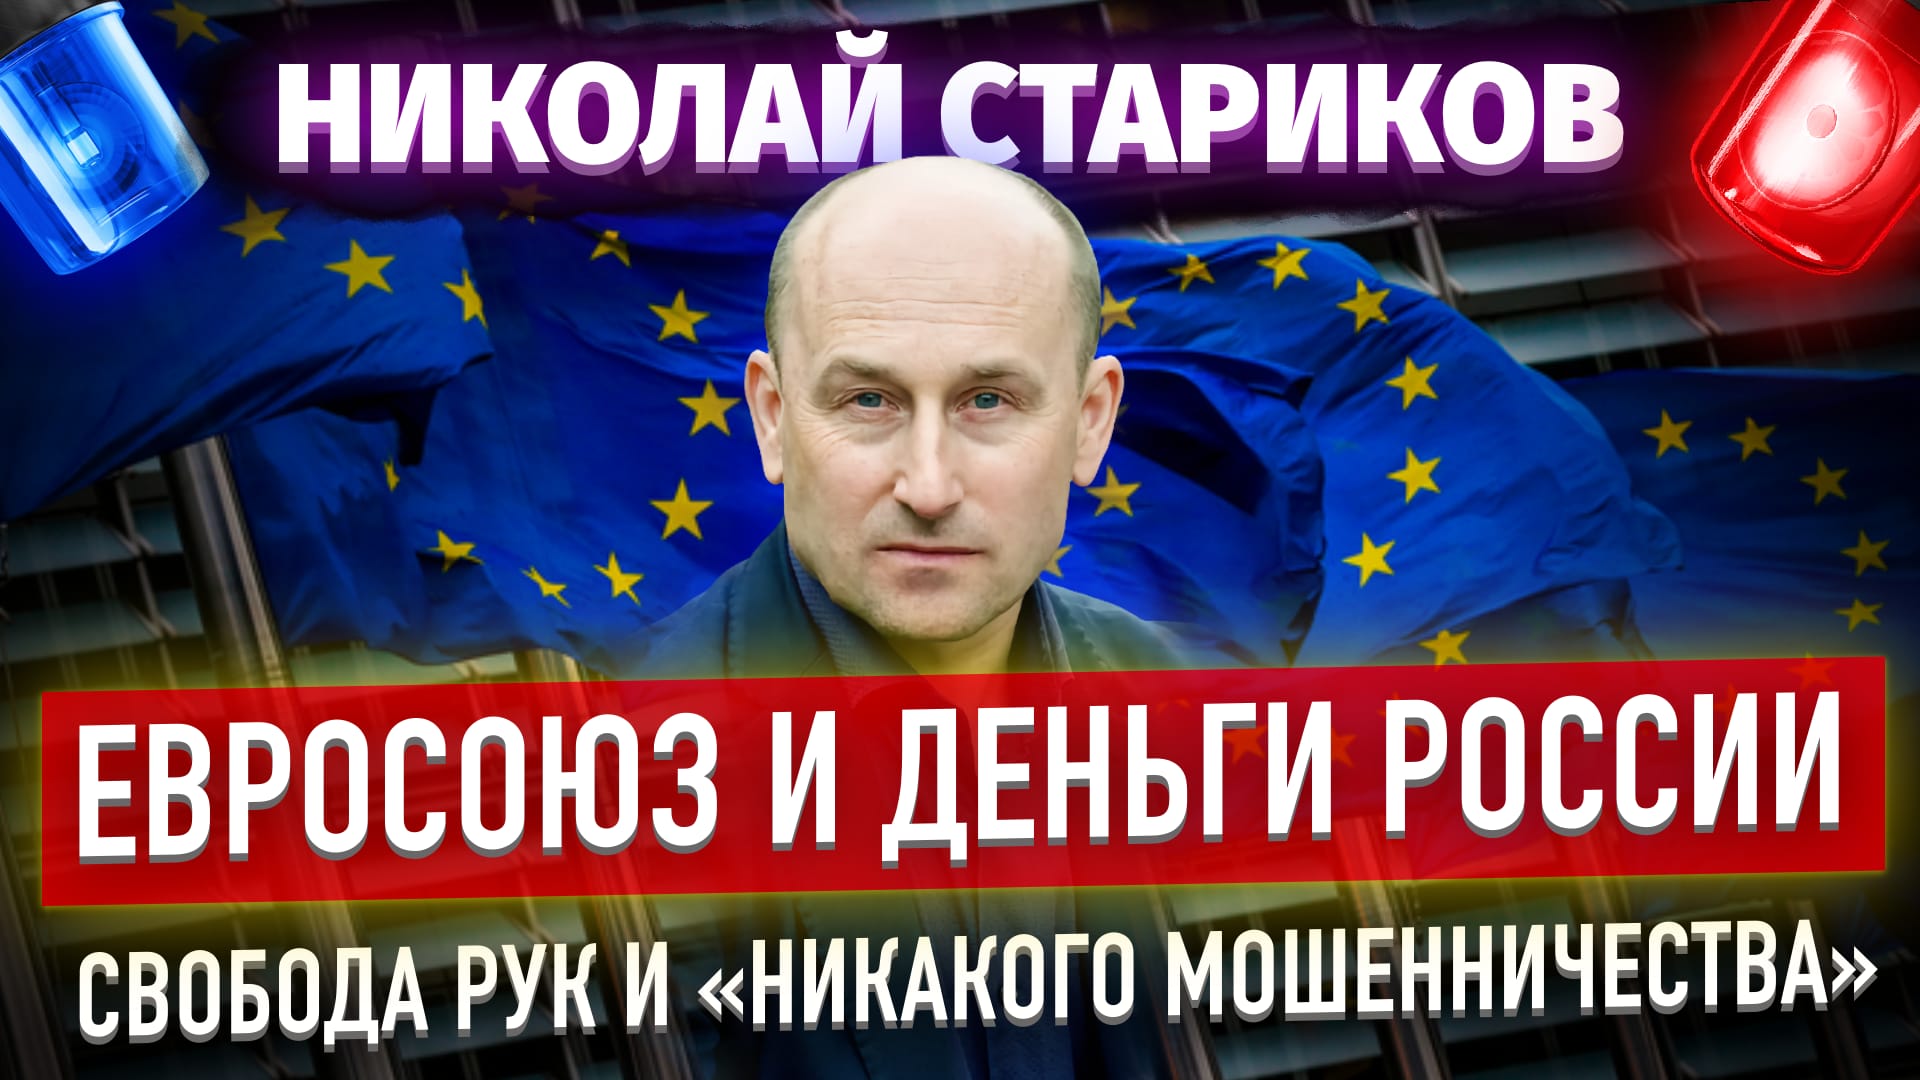 Евросоюз и деньги России - свобода рук и «никакого мошенничества» (Николай Стариков)